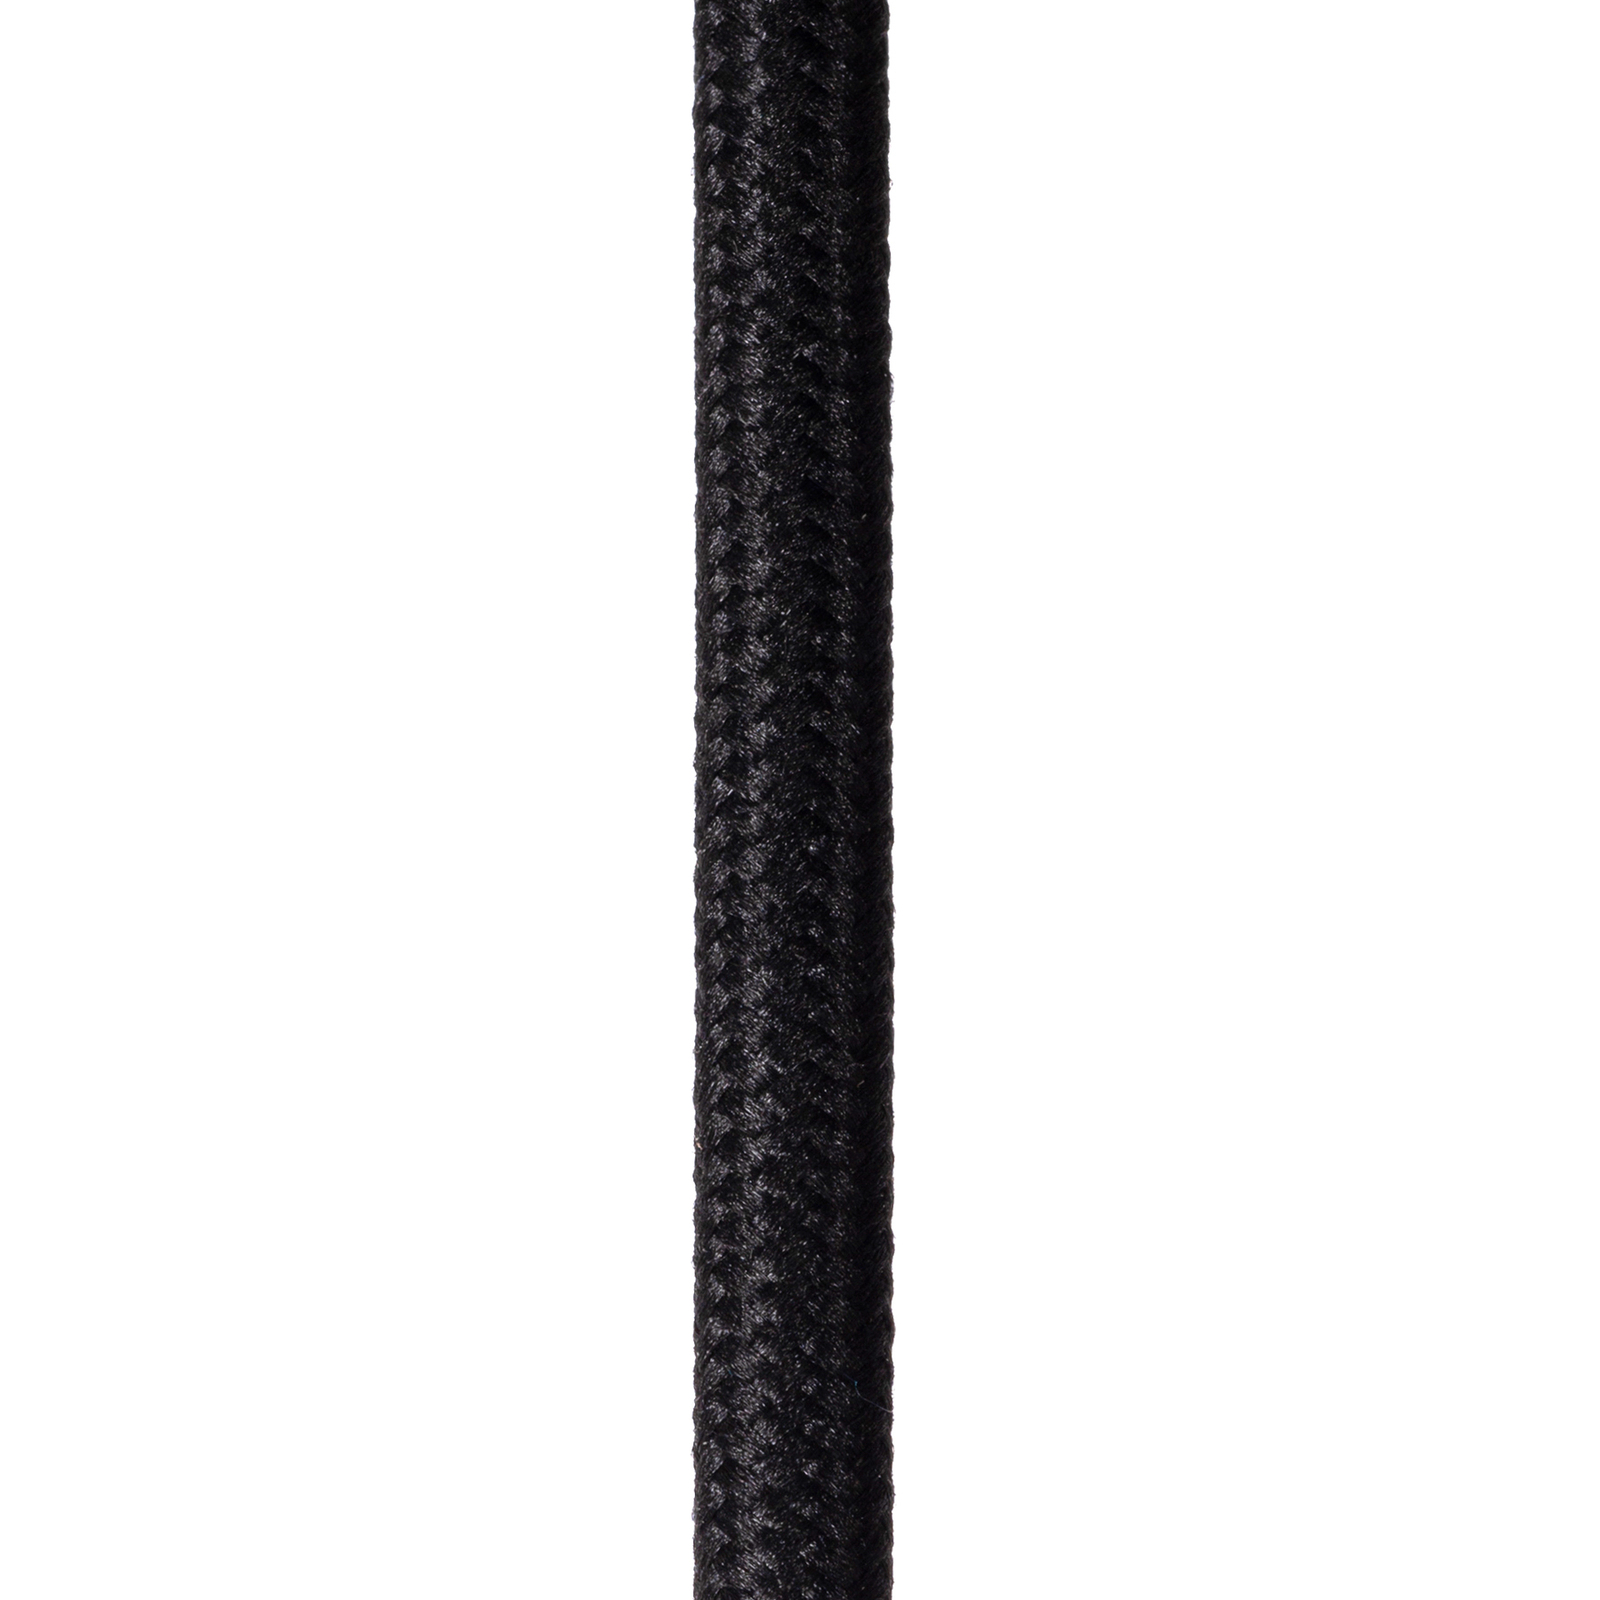 Hängeleuchte Siemon aus Stahl, Ø 40 cm, schwarz